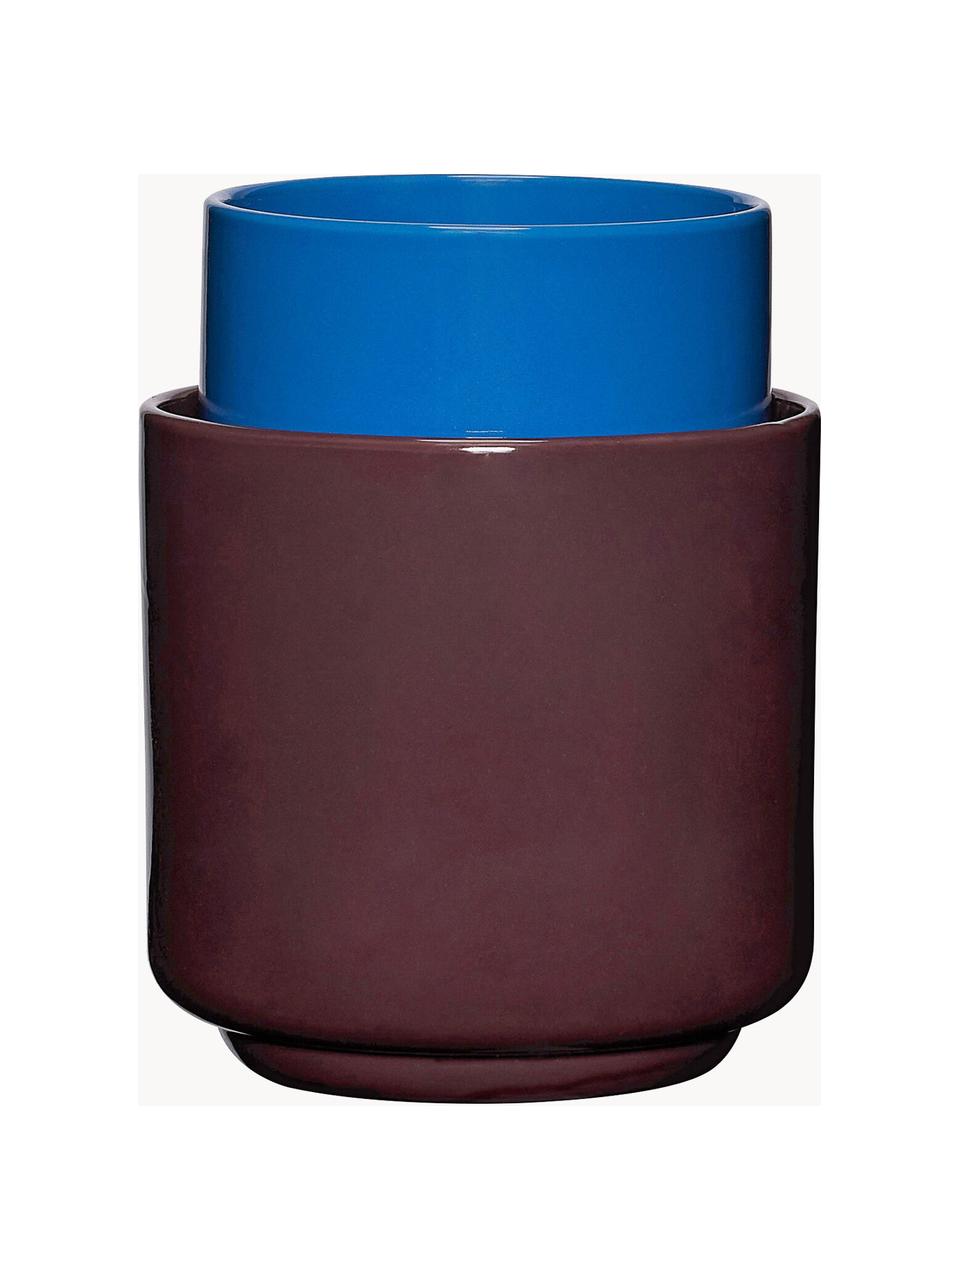 Set di 2 contenitori multifunzionali fatti a mano Deux Pots, Polvere di pietra, Blu, rosso vino, Set in varie misure